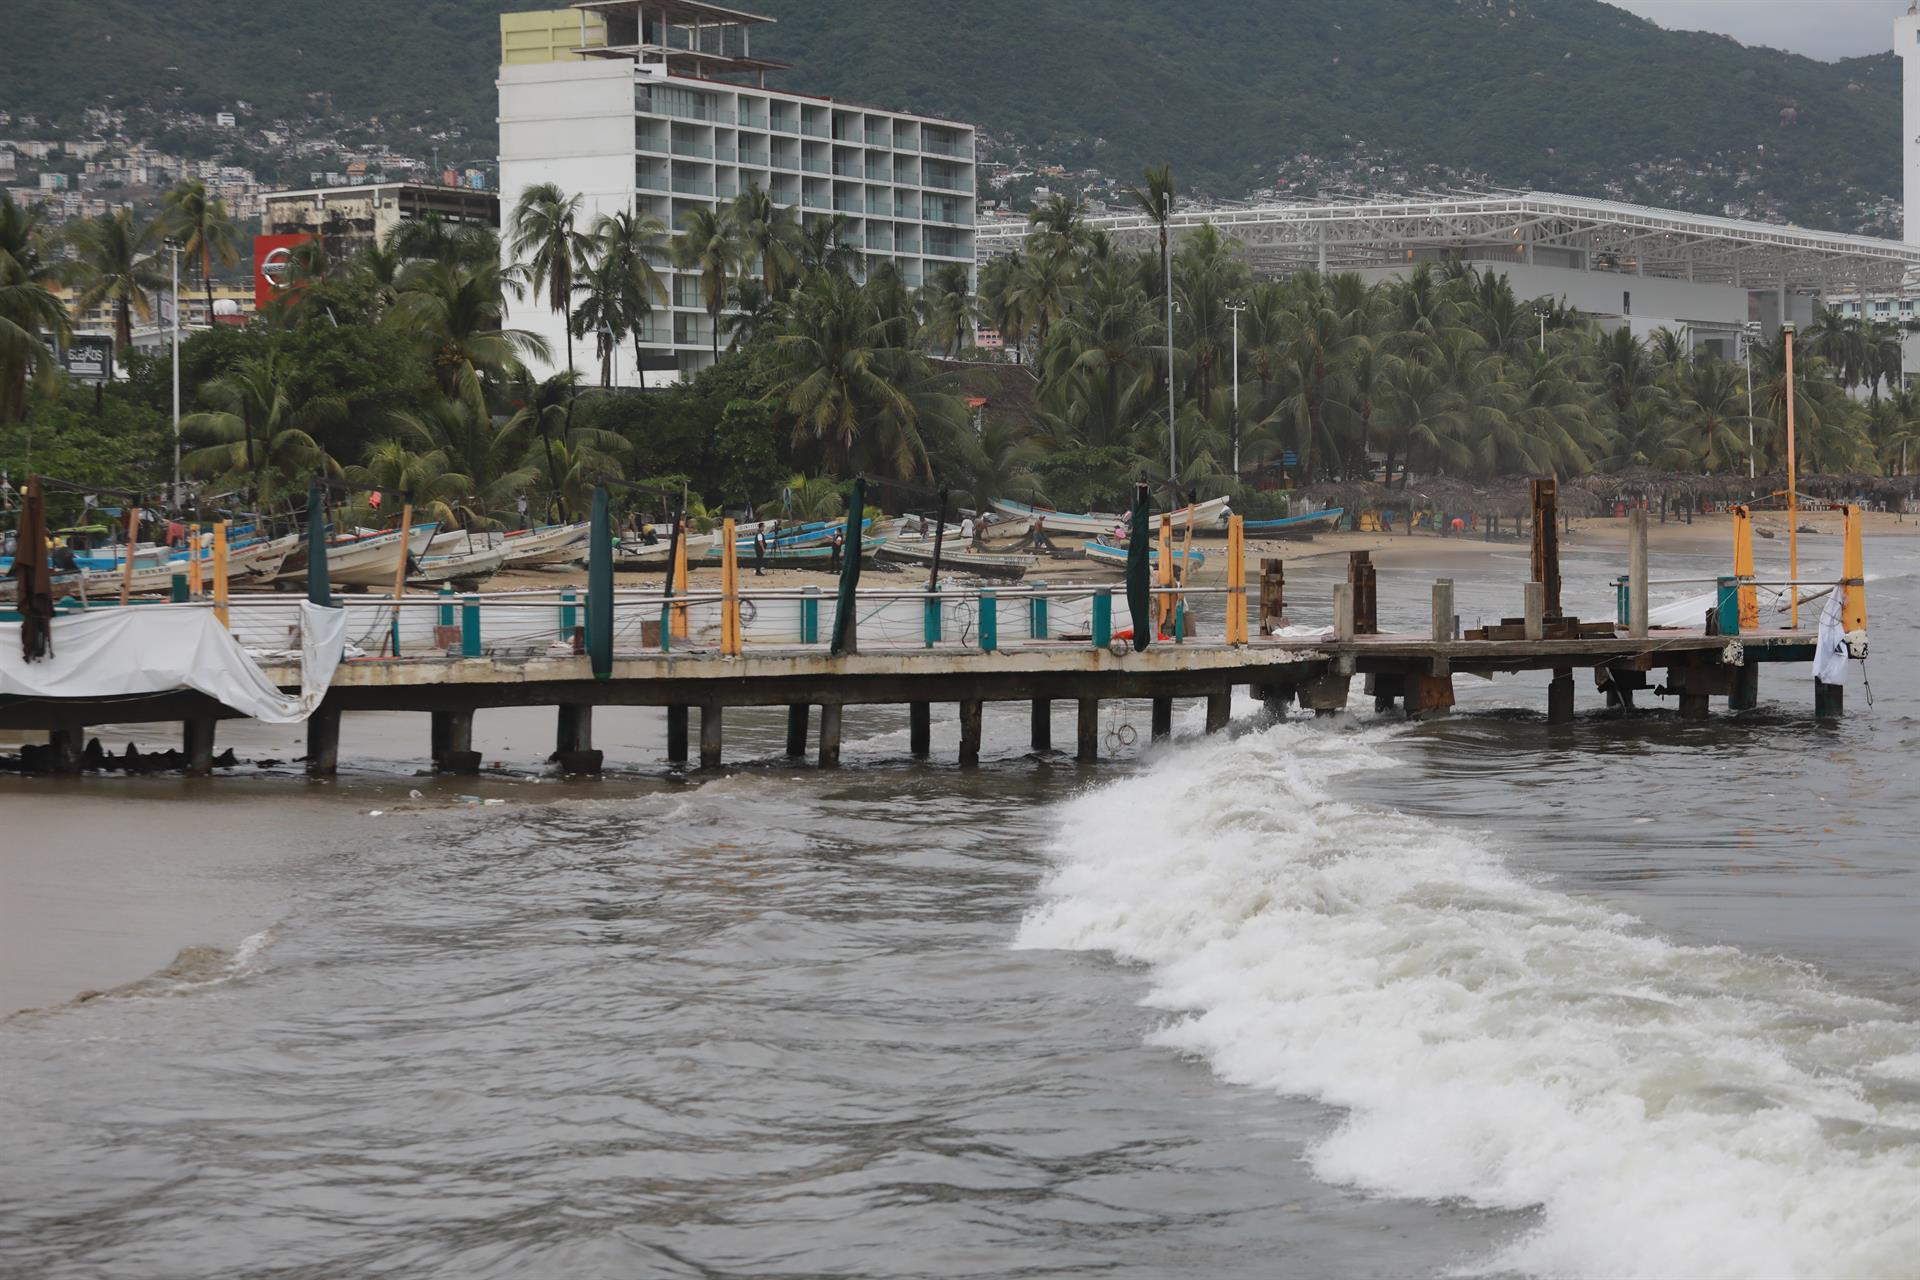 Vista general de una playa de Acapulco, estado de Guerrero (México). Imagen de archivo. EFE/ David Guzmán
